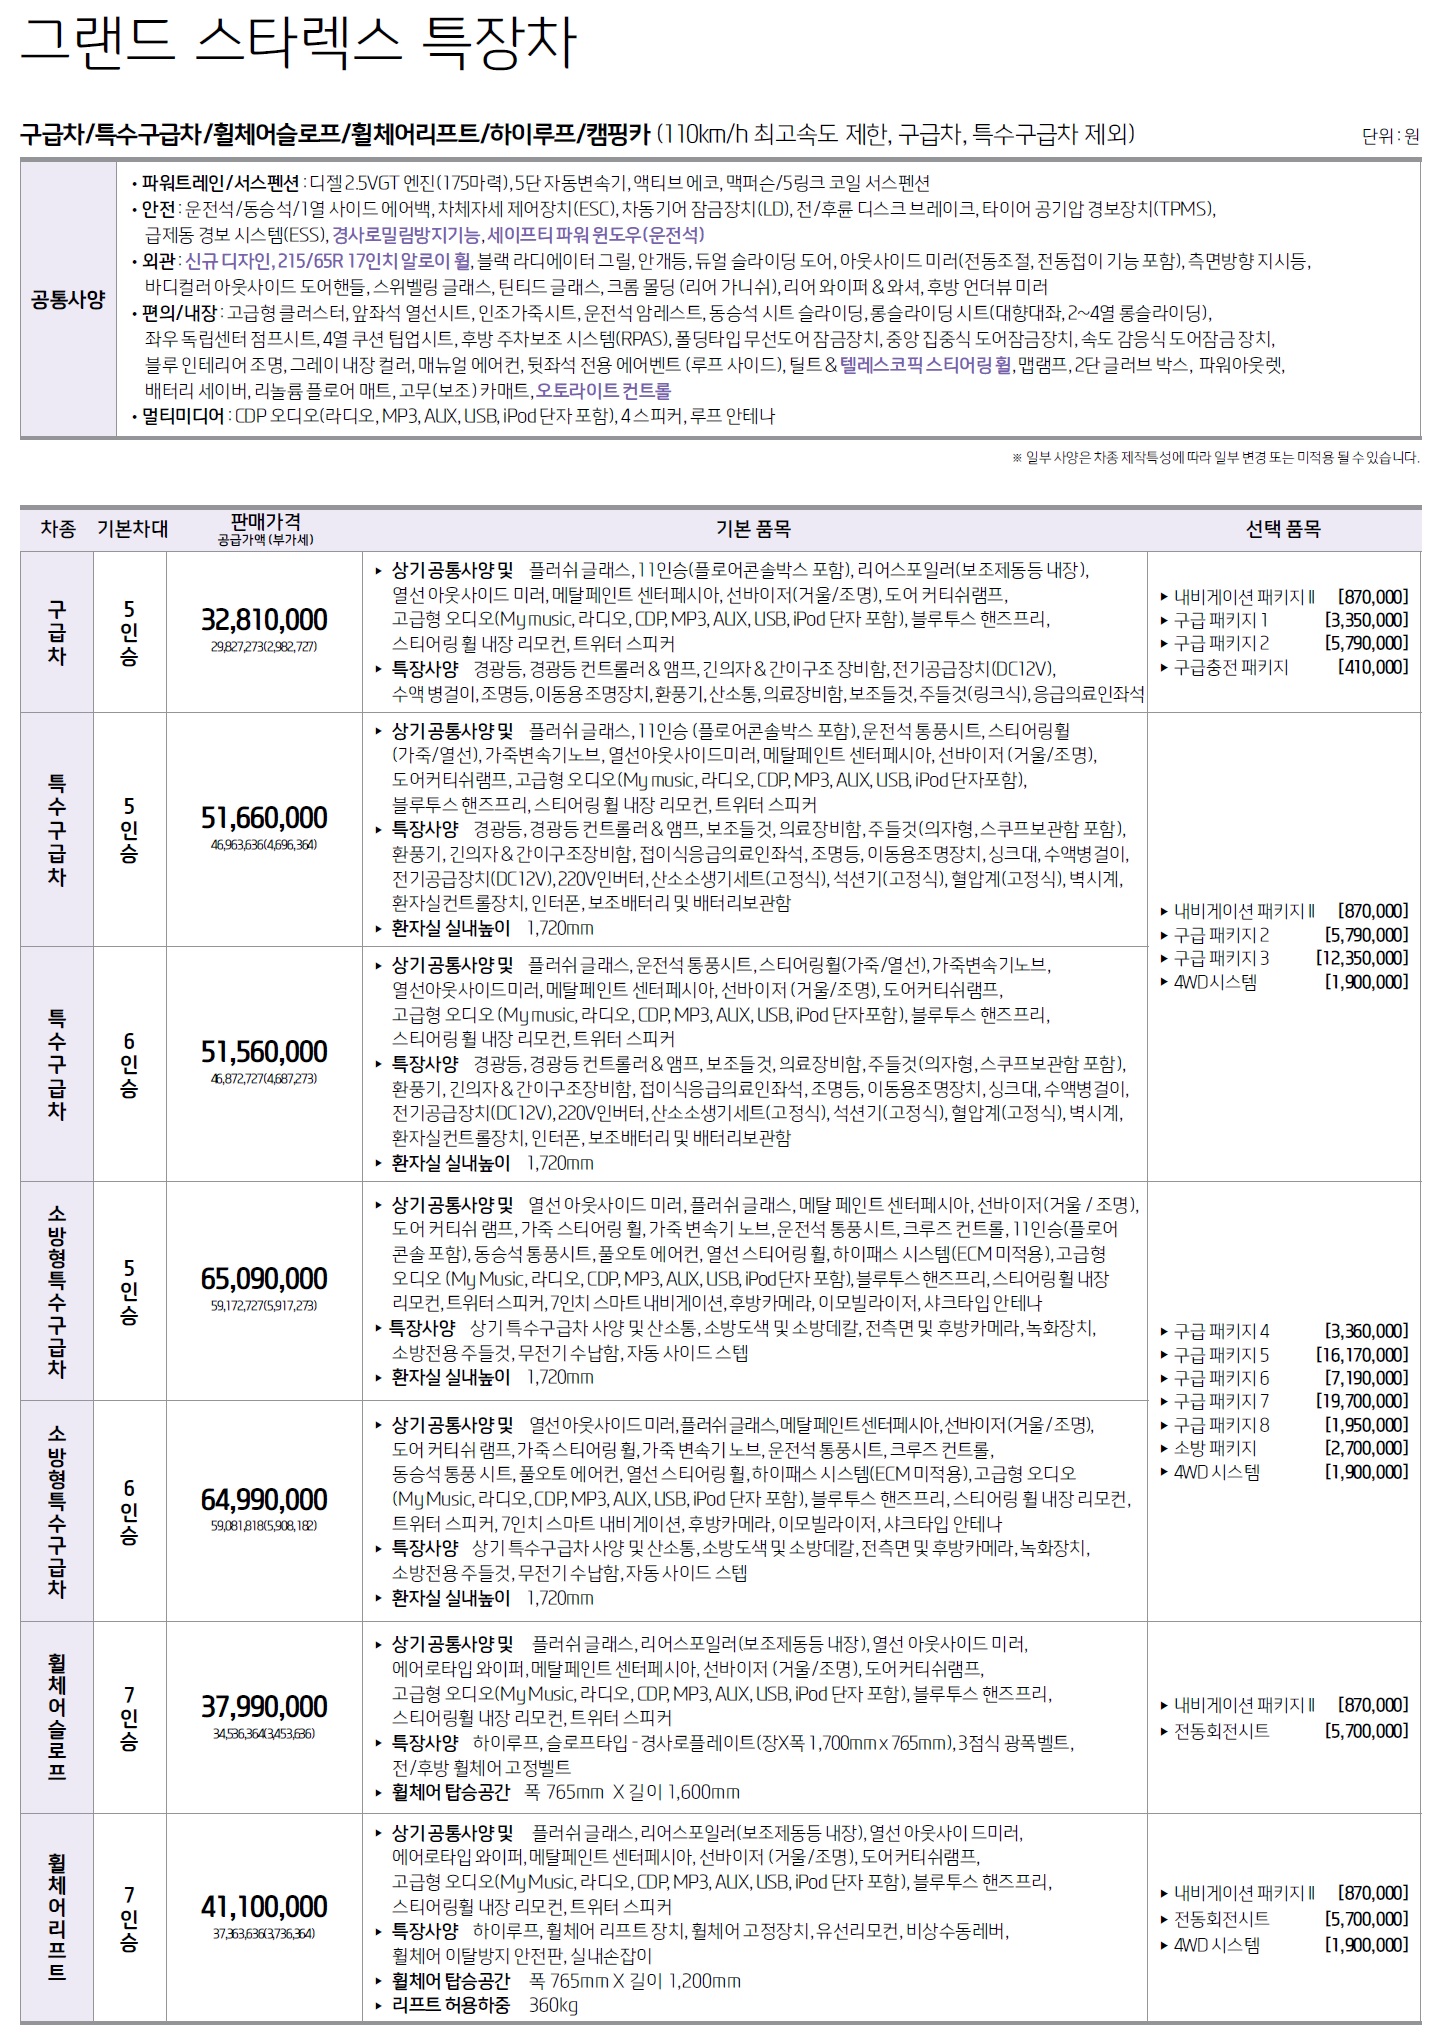 그랜드스타렉스 특장차 가격표 - 2019년 04월 -1.jpg